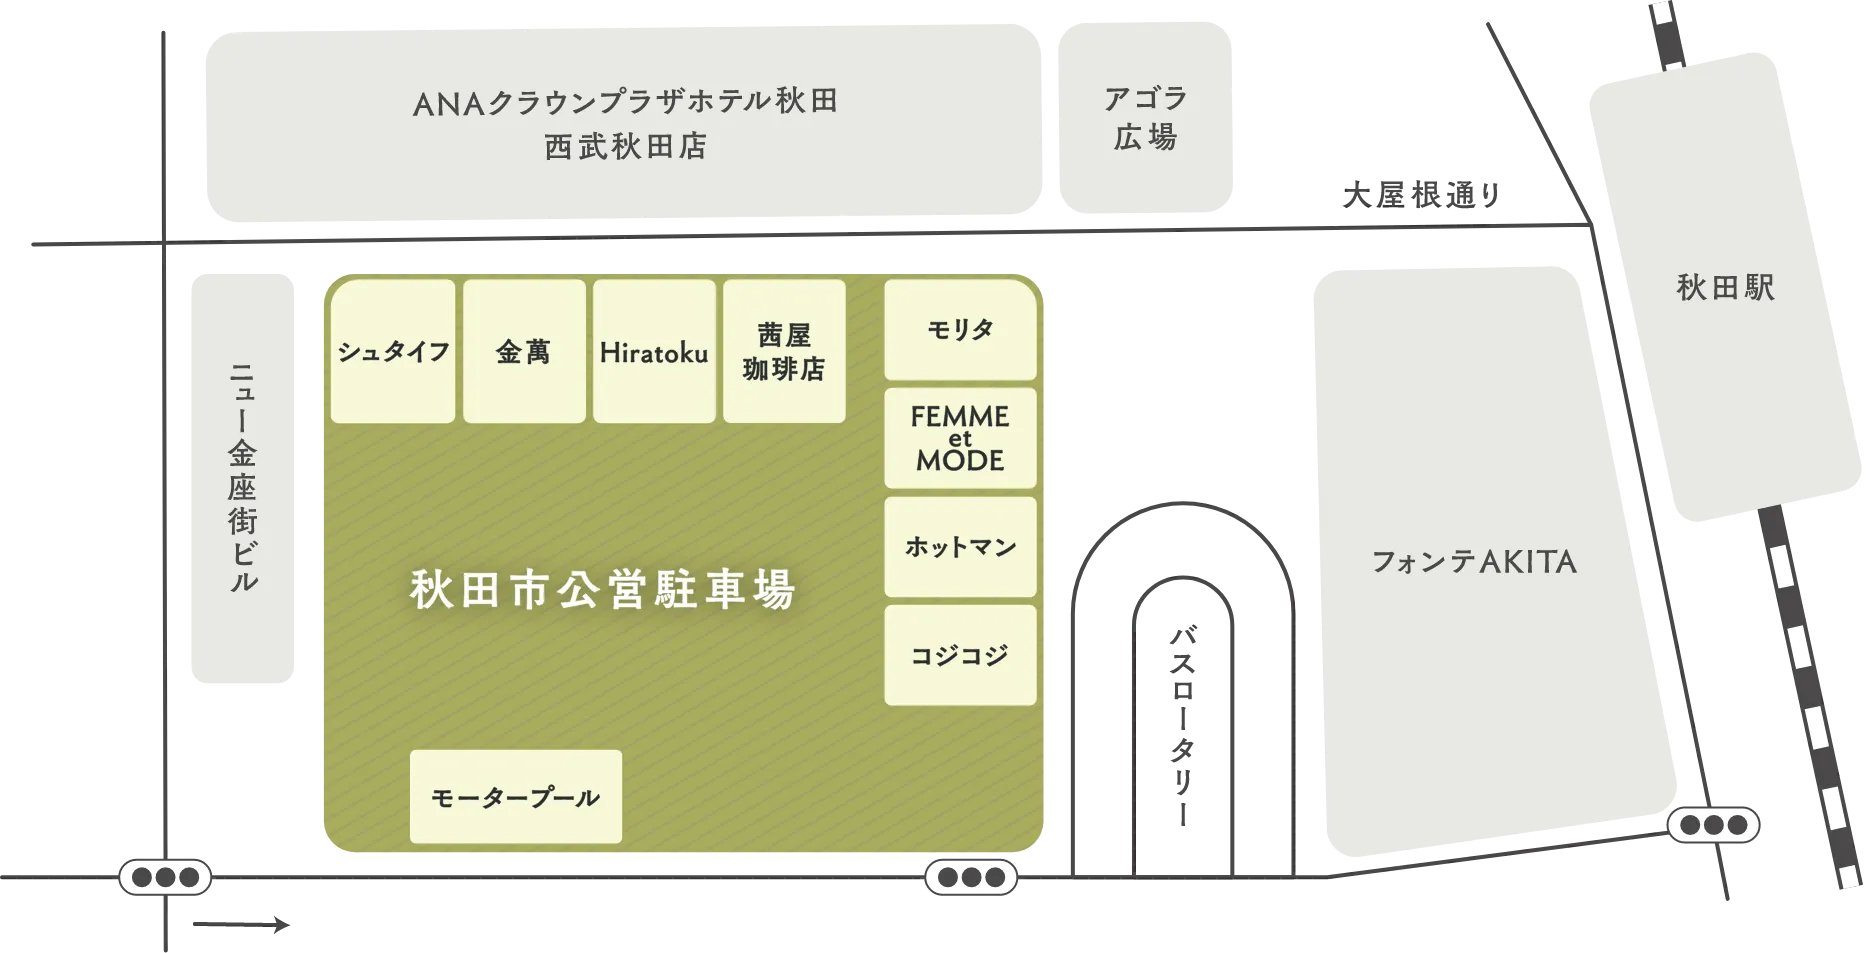 1Fの周辺マップ。秋田市公営駐車場を中心に様々なショップや施設、秋田駅があります。